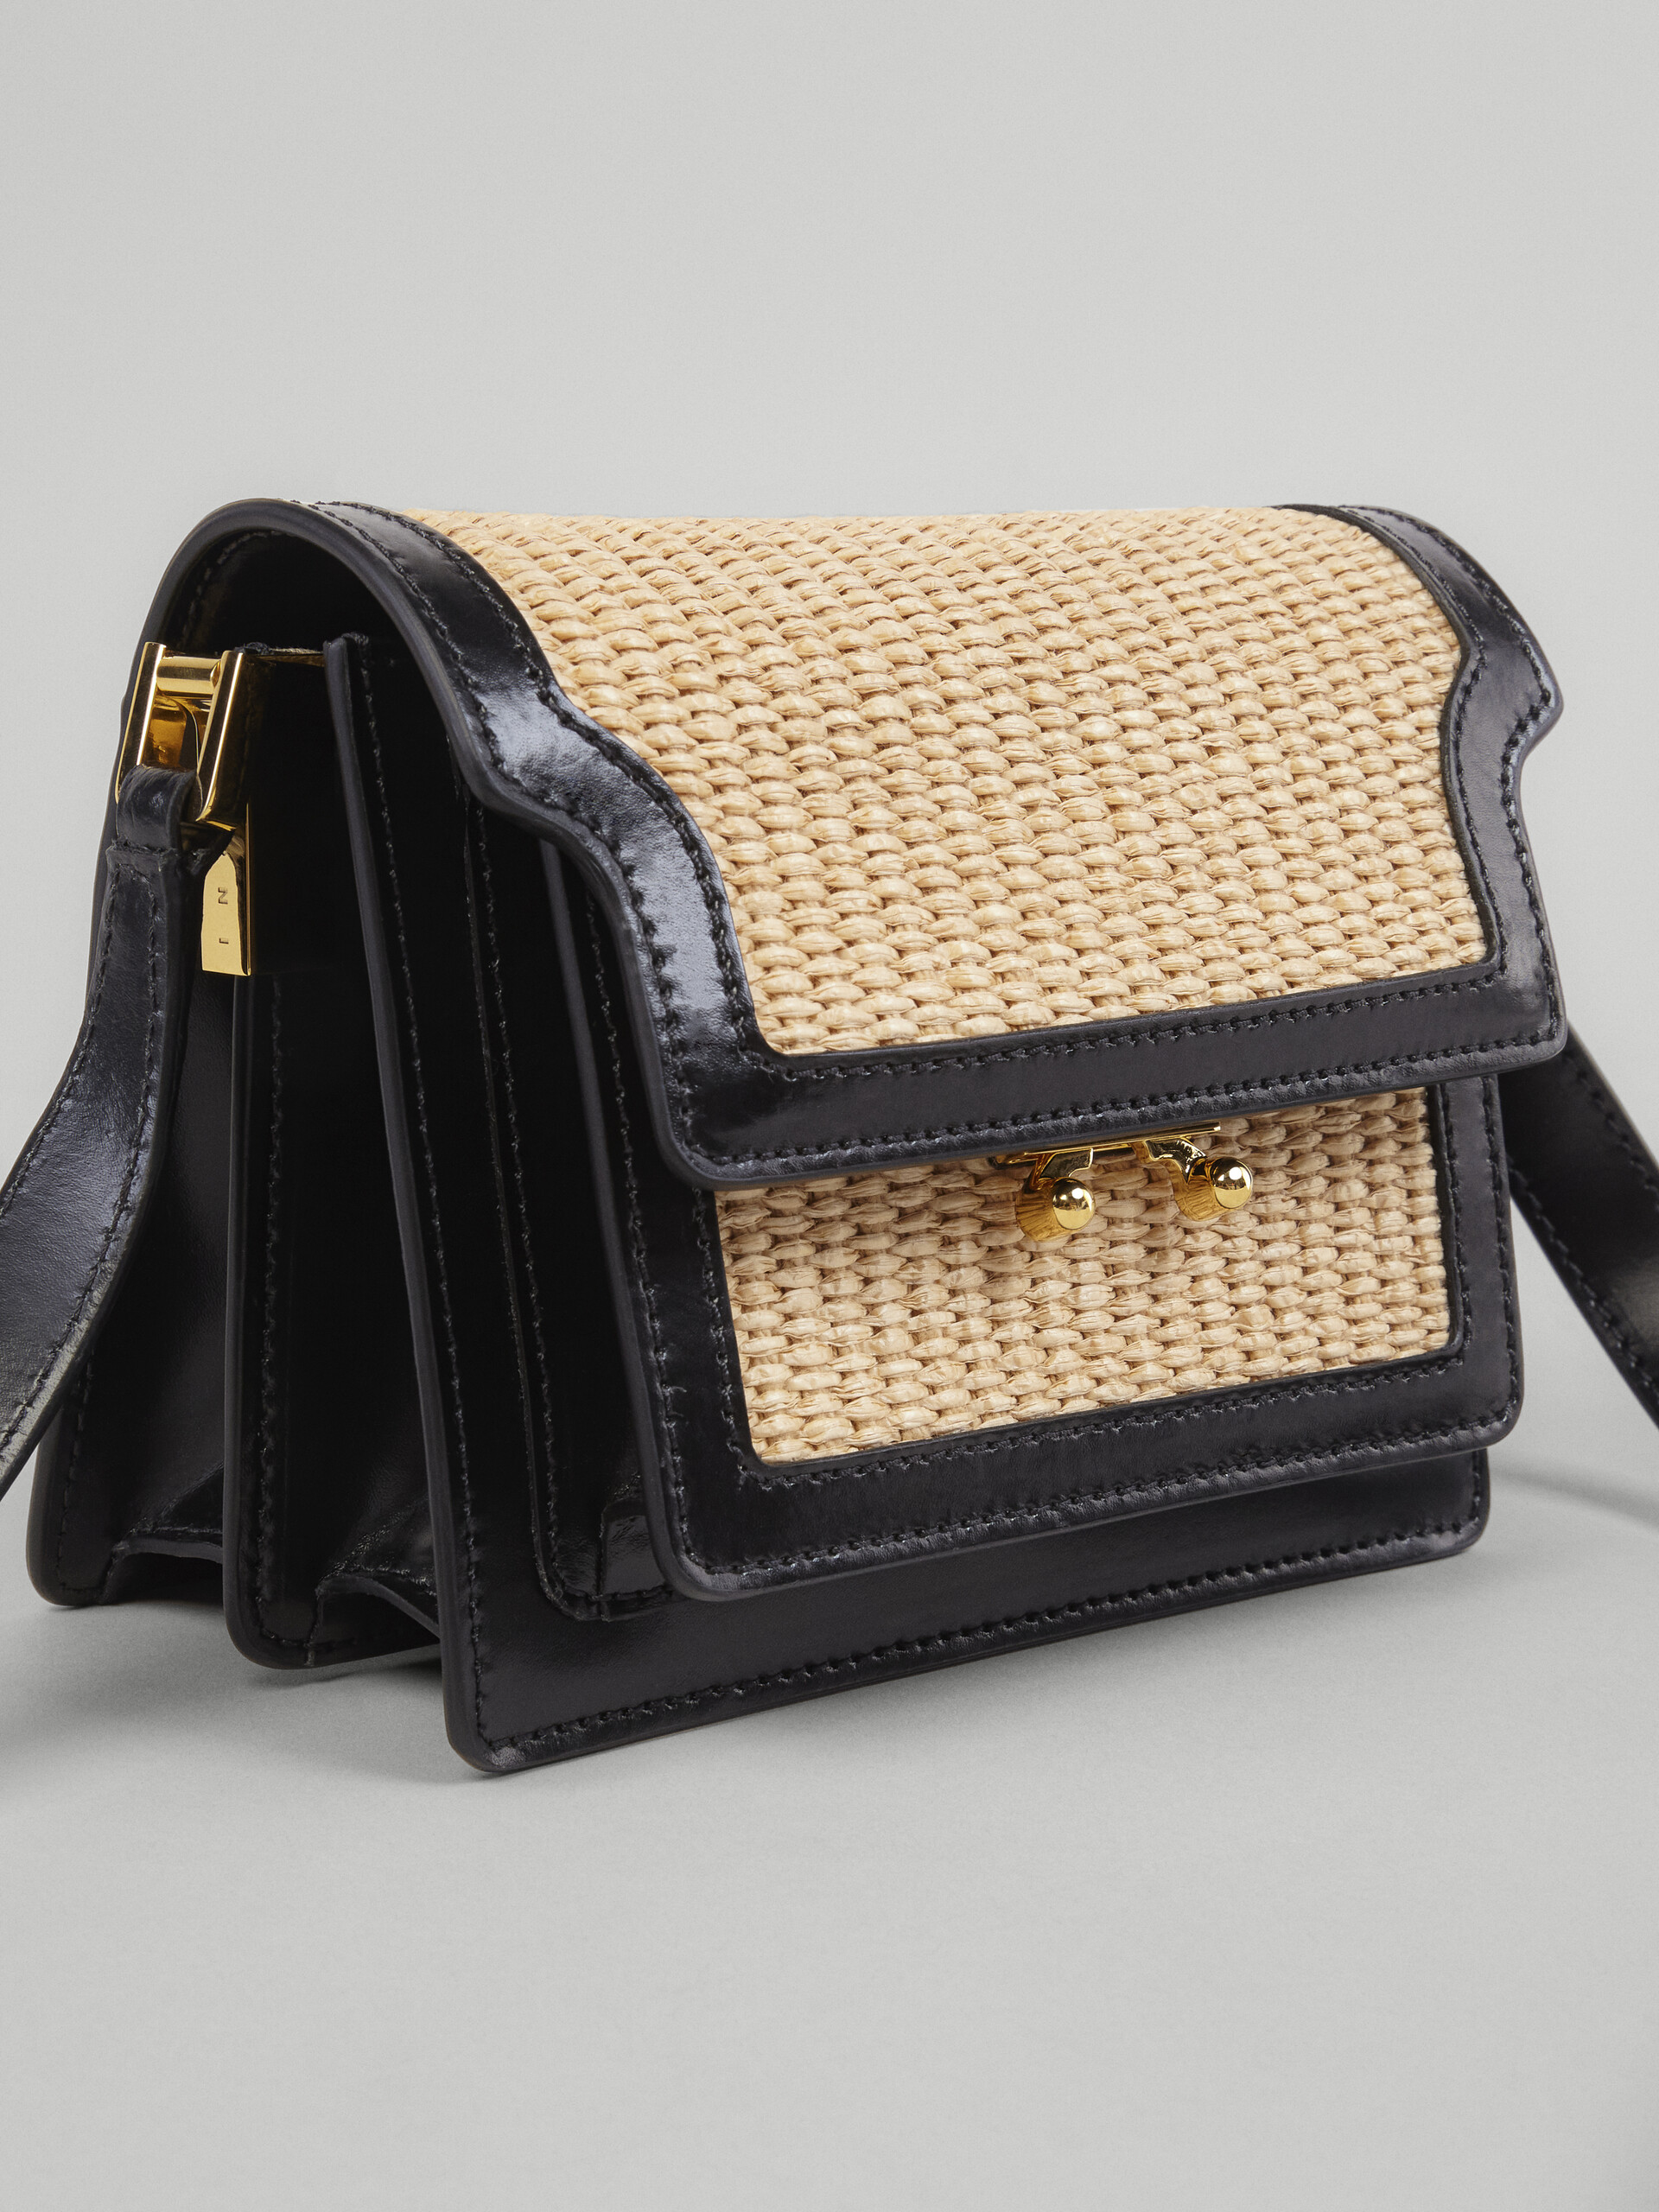 TRUNK SOFT bag mini in pelle nera e rafia - Borse a spalla - Image 4